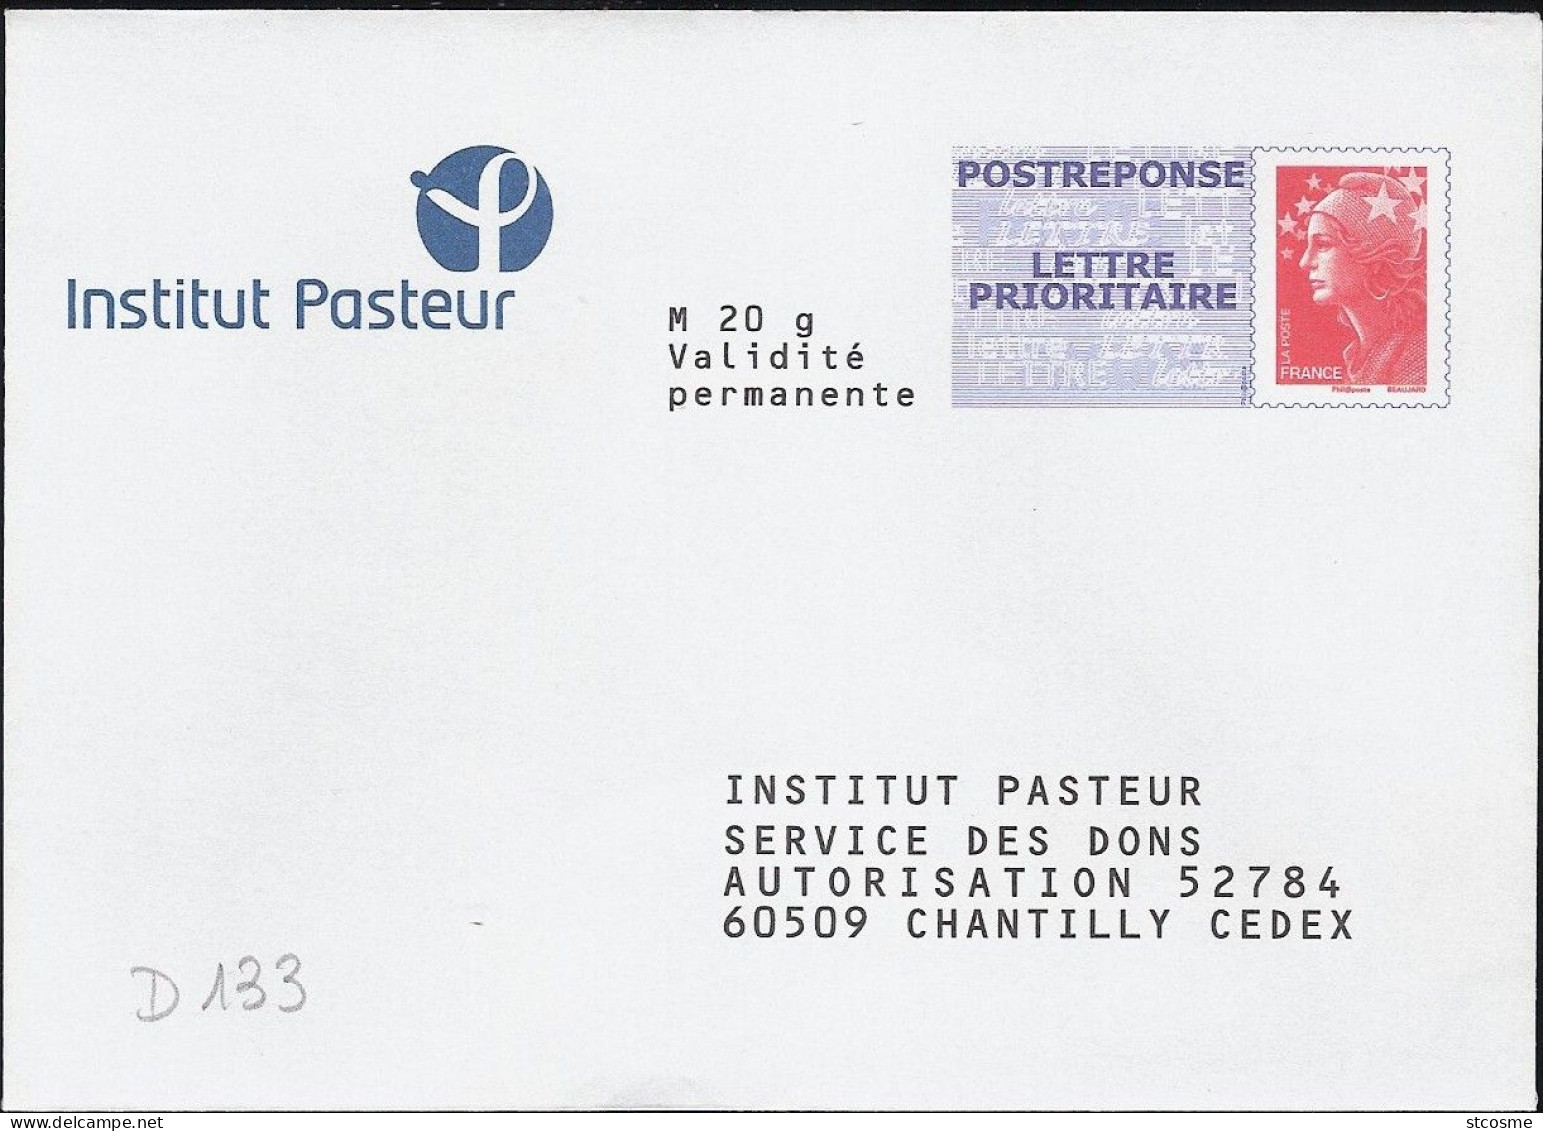 D0133-B - Entier / Stationery / PSE - PAP Réponse Beaujard - Institut Pasteur - Agrément 10P497 - Prêts-à-poster: Réponse /Beaujard